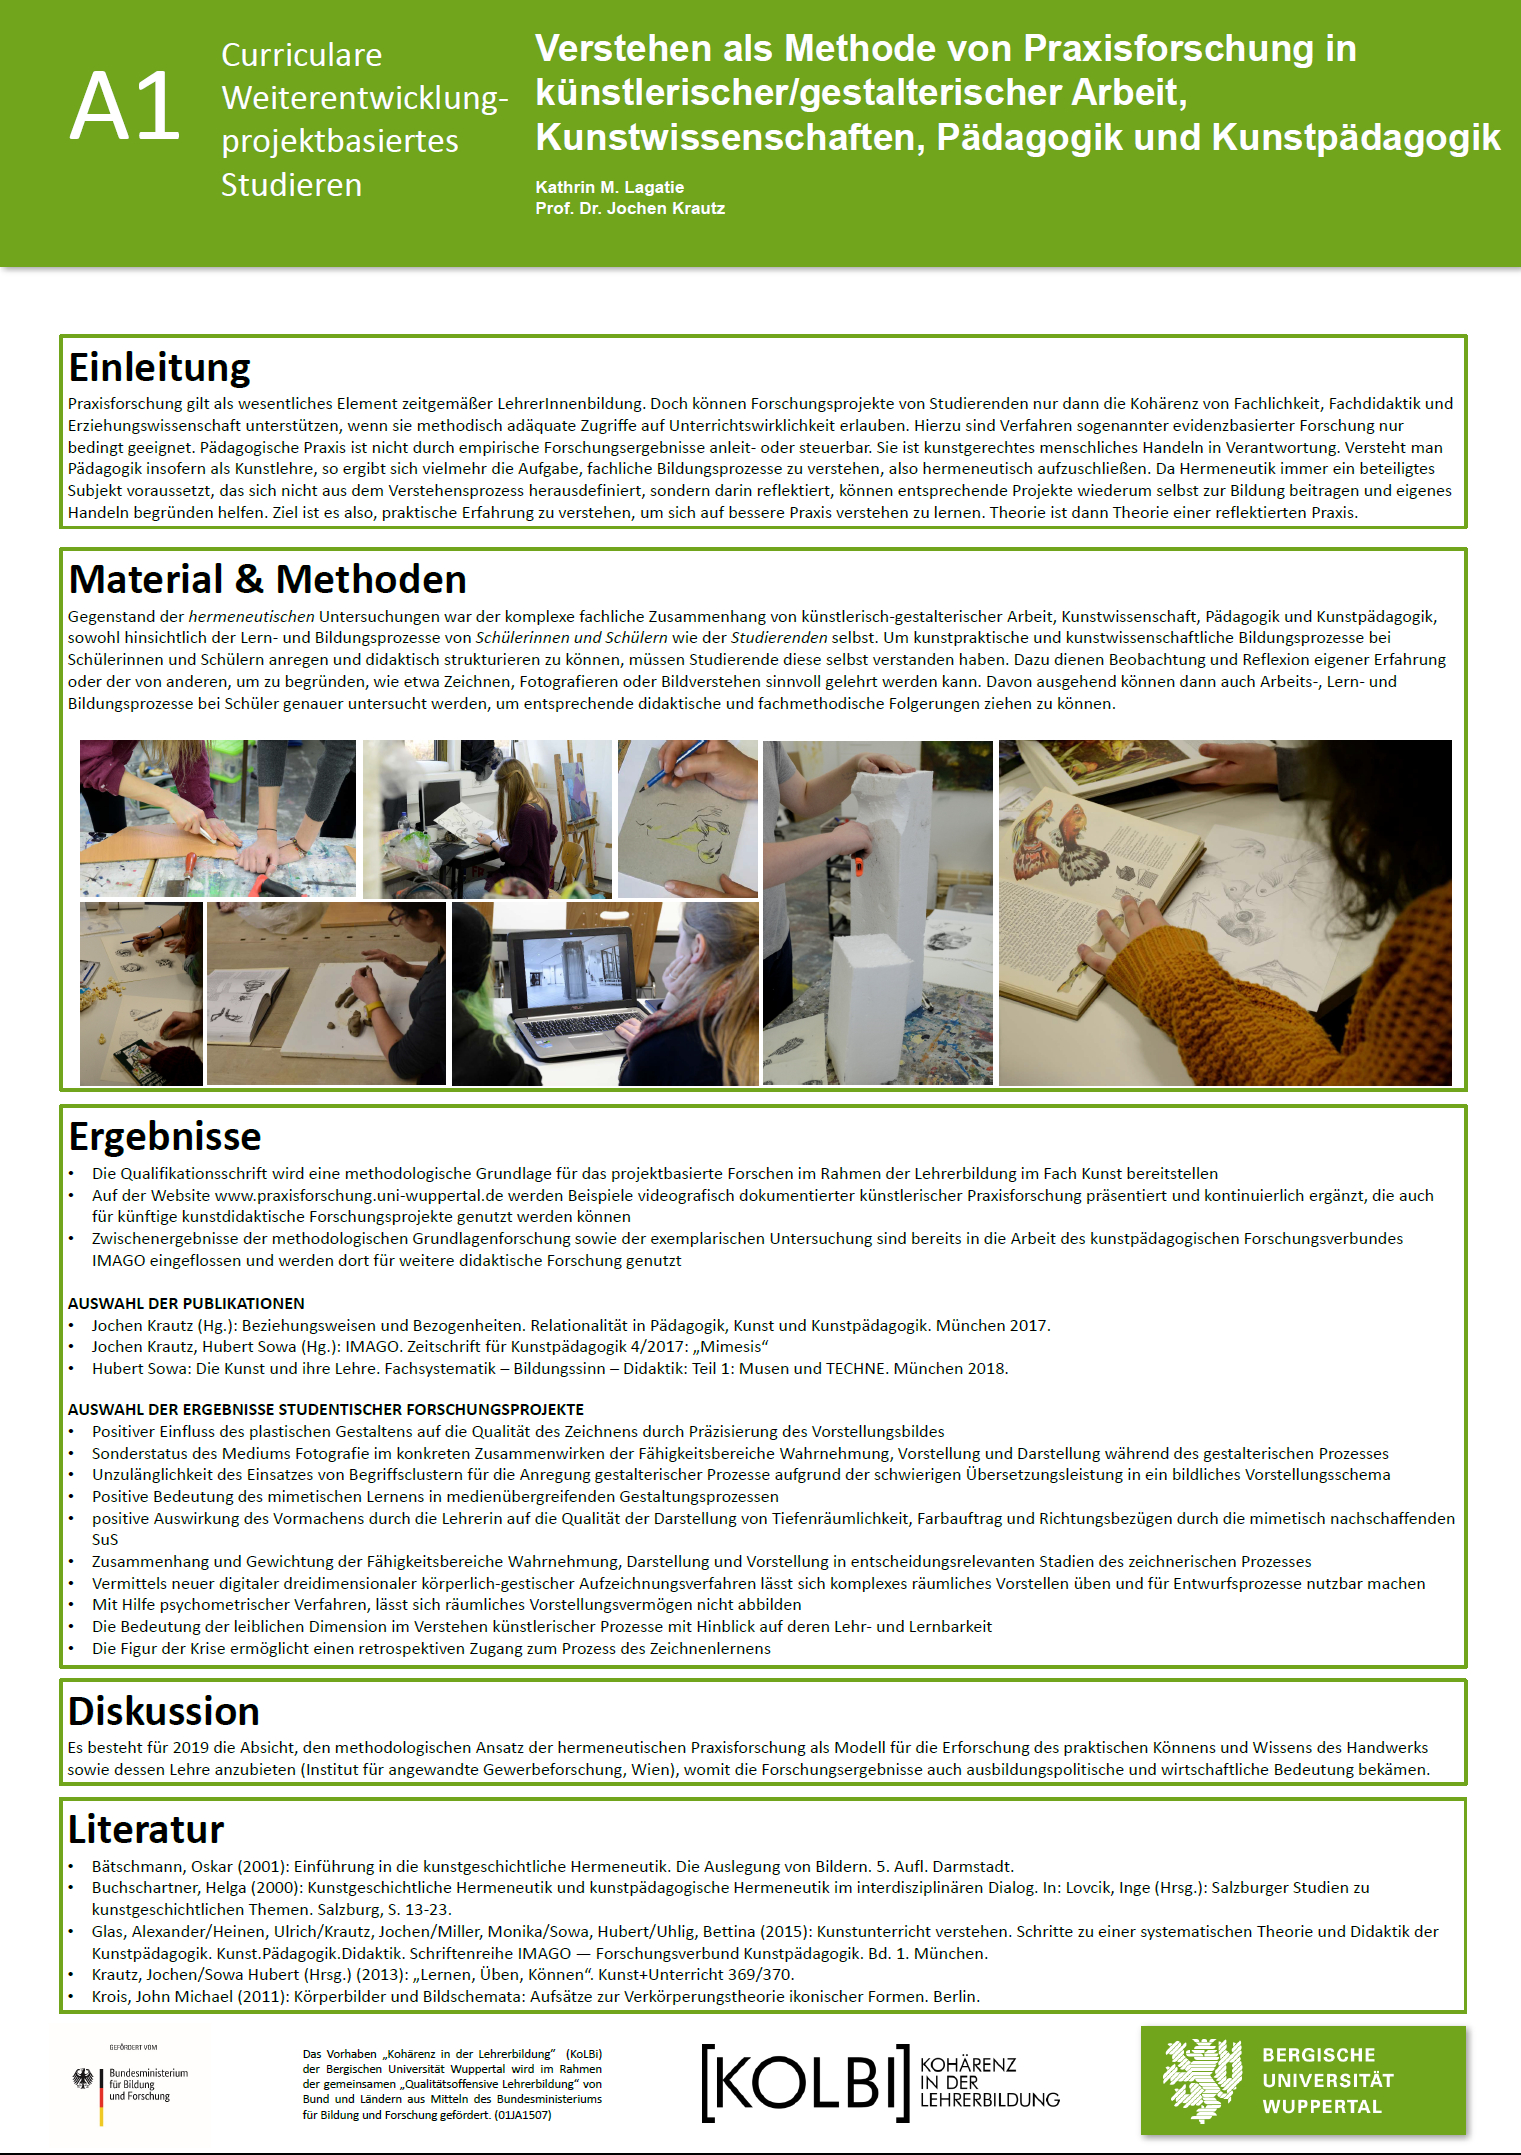 Poster Projekt Verstehen als Methode (Kunstpädagogik)